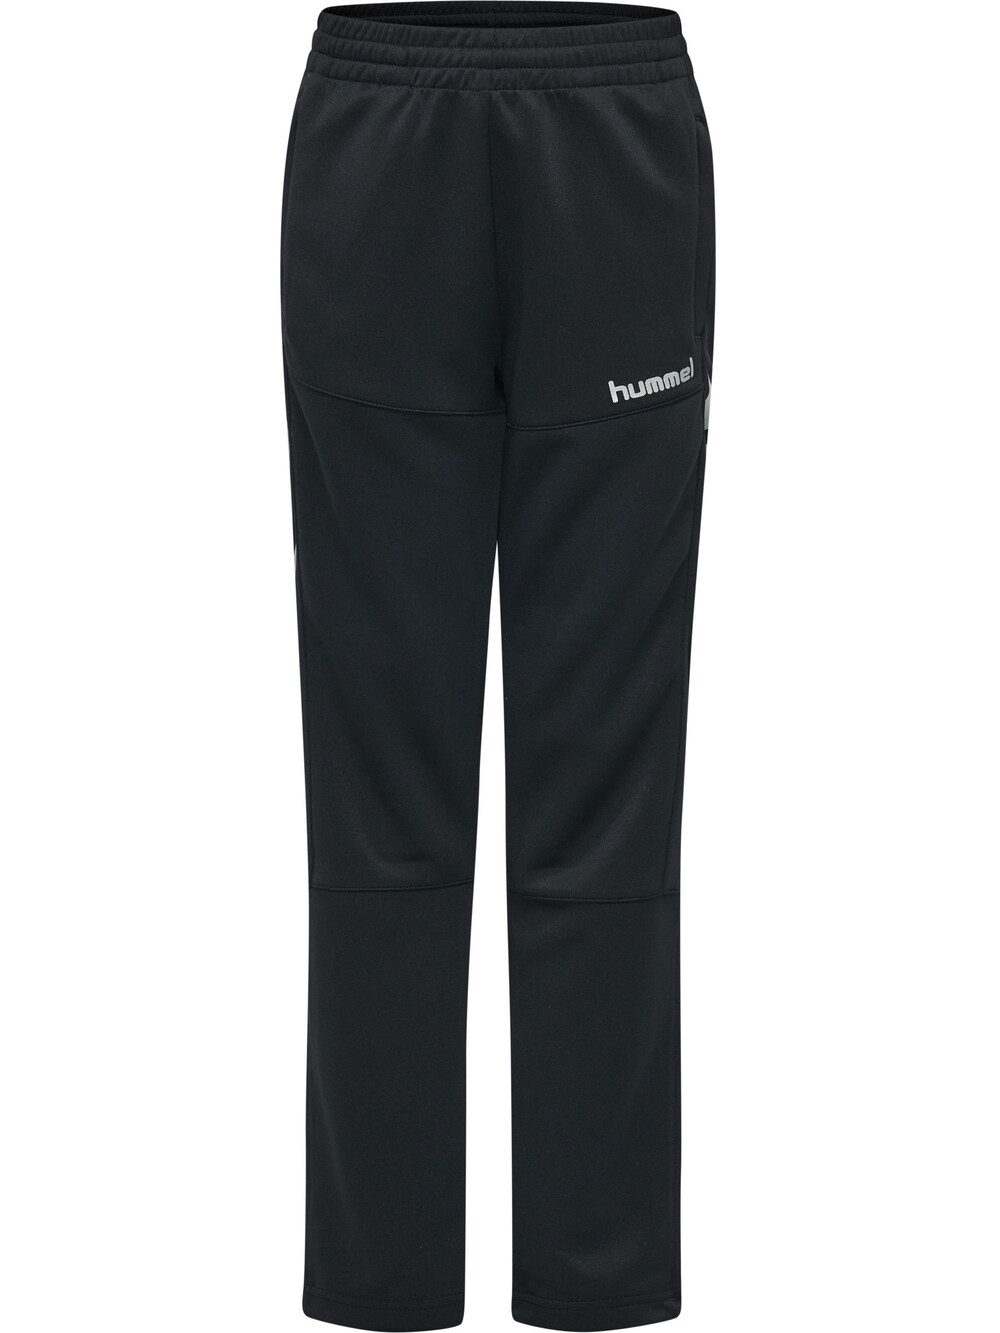 Обычные тренировочные брюки Hummel, черный обычные тренировочные брюки virtus черный